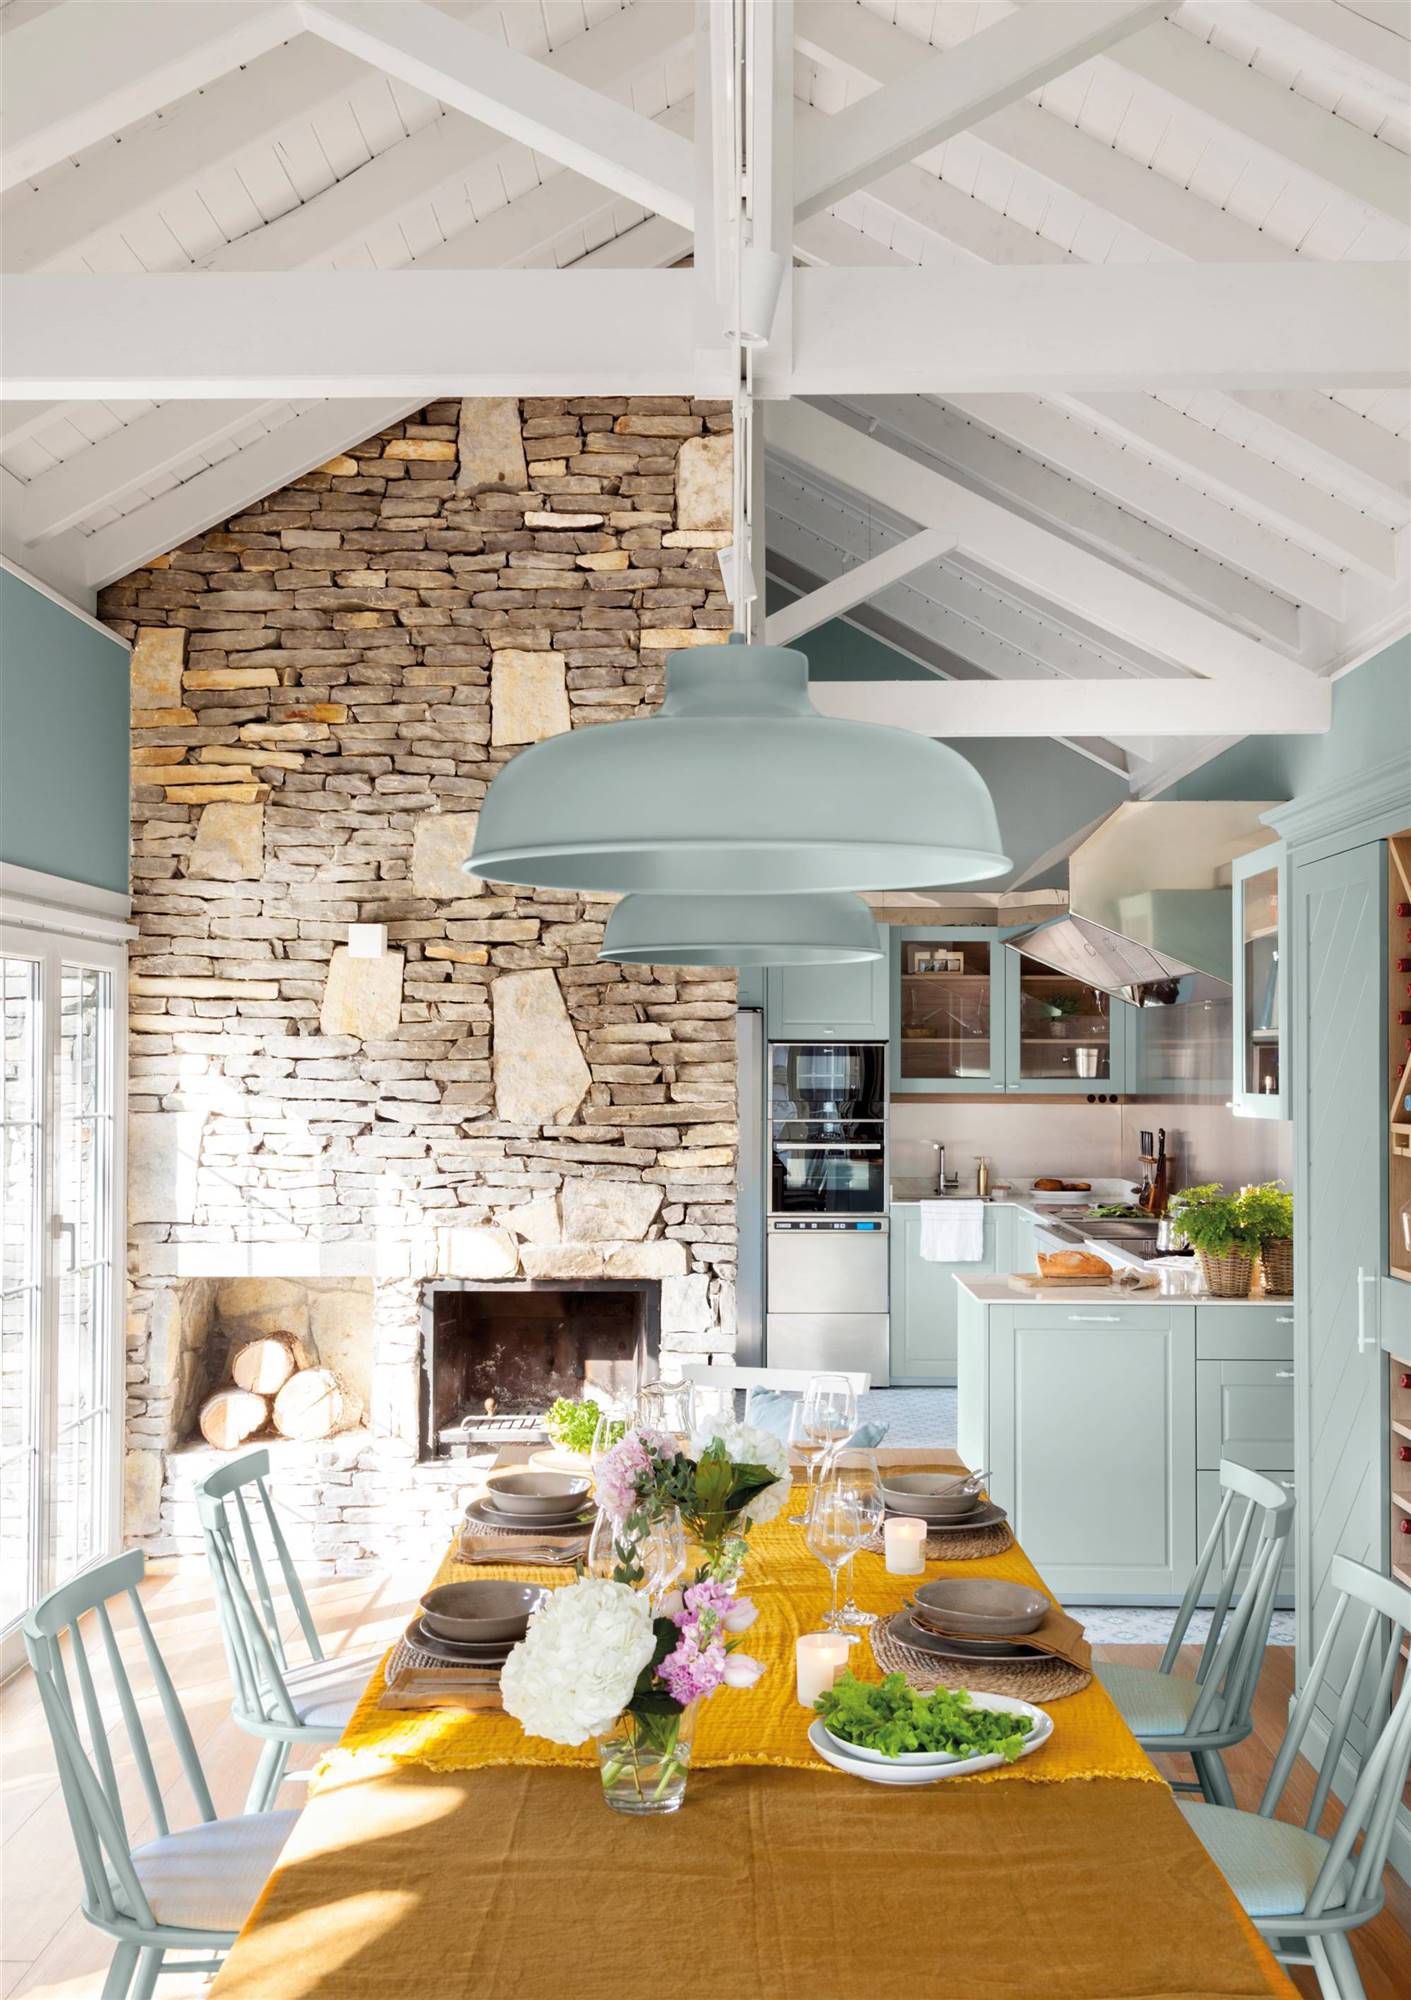 Cómo decorar una cocina azul. 